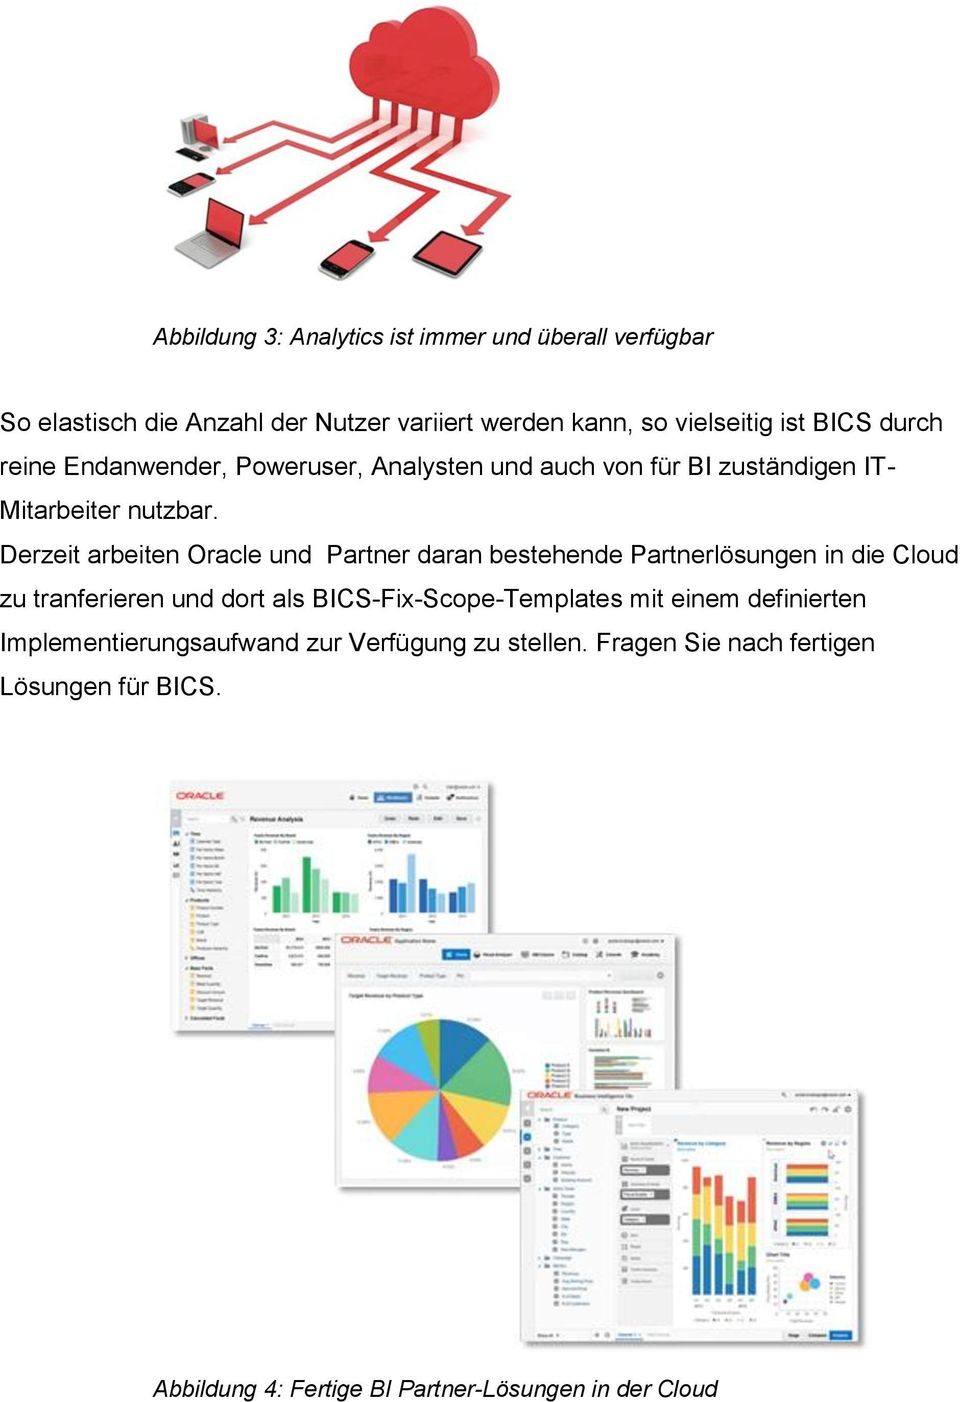 Derzeit arbeiten Oracle und Partner daran bestehende Partnerlösungen in die Cloud zu tranferieren und dort als BICS-Fix-Scope-Templates